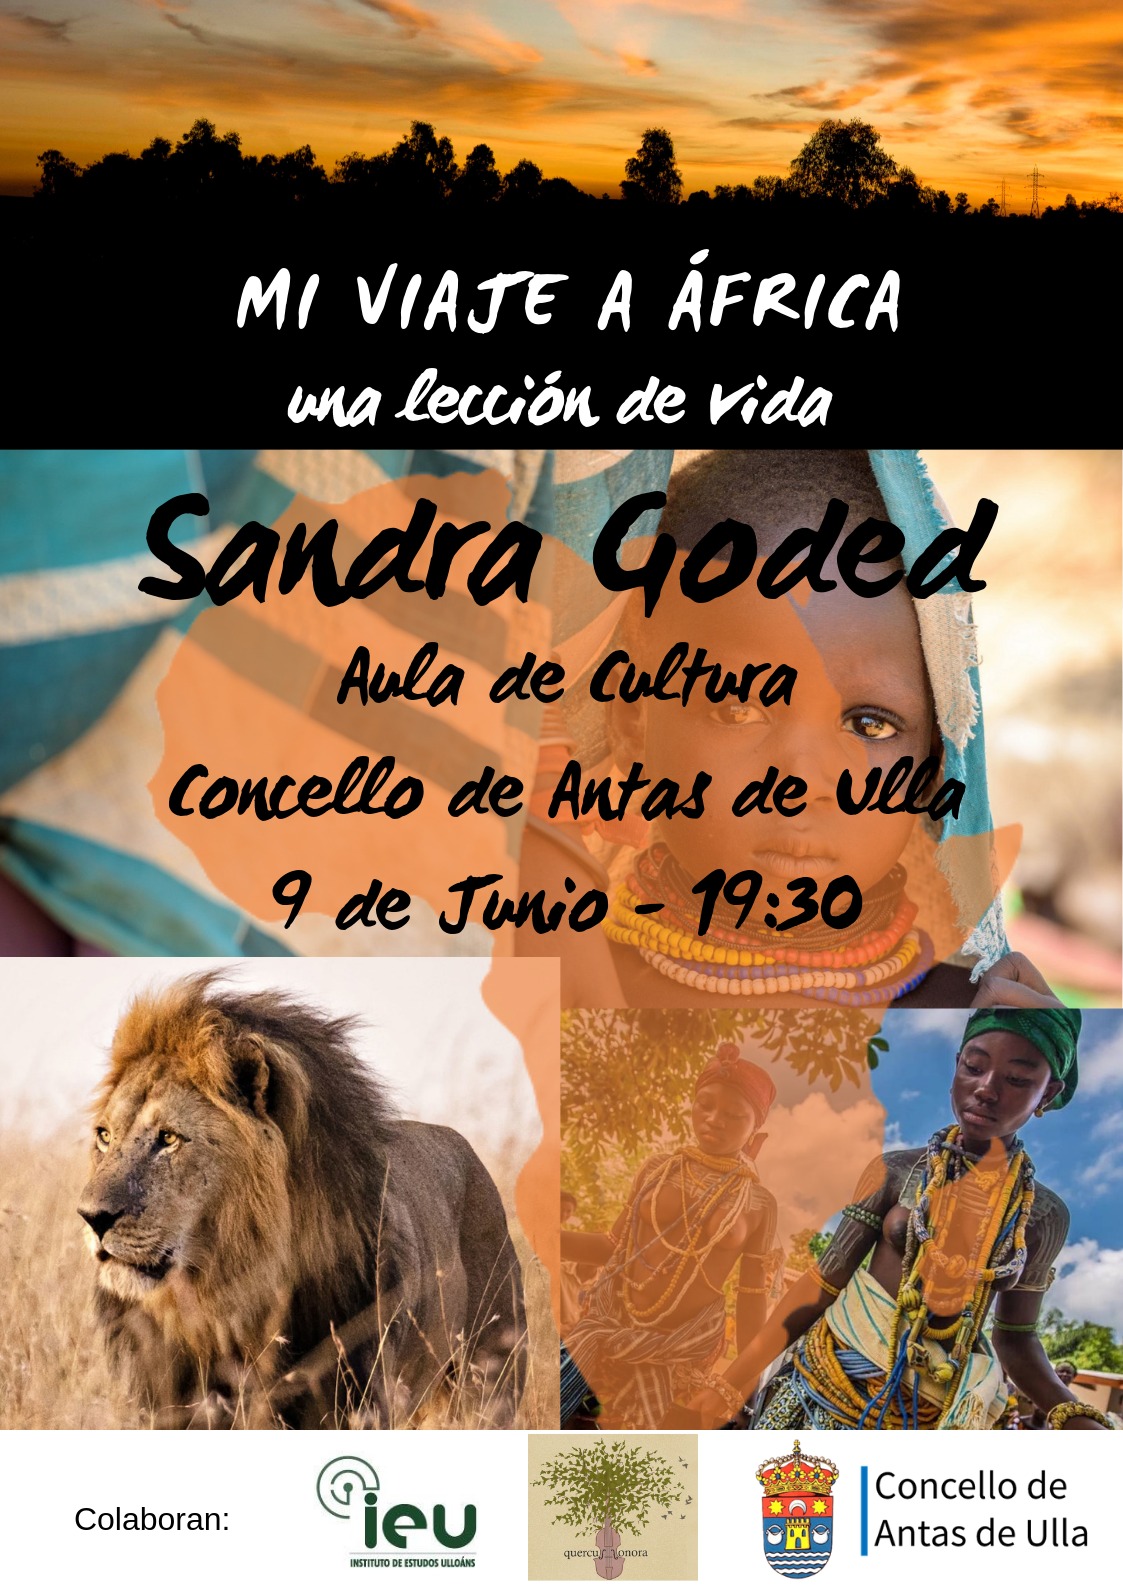 Africa, Conferencia Sandra Goded 9 xuño 2019, Instituto de Estudos Ulloáns, Quercus sonora, IEU